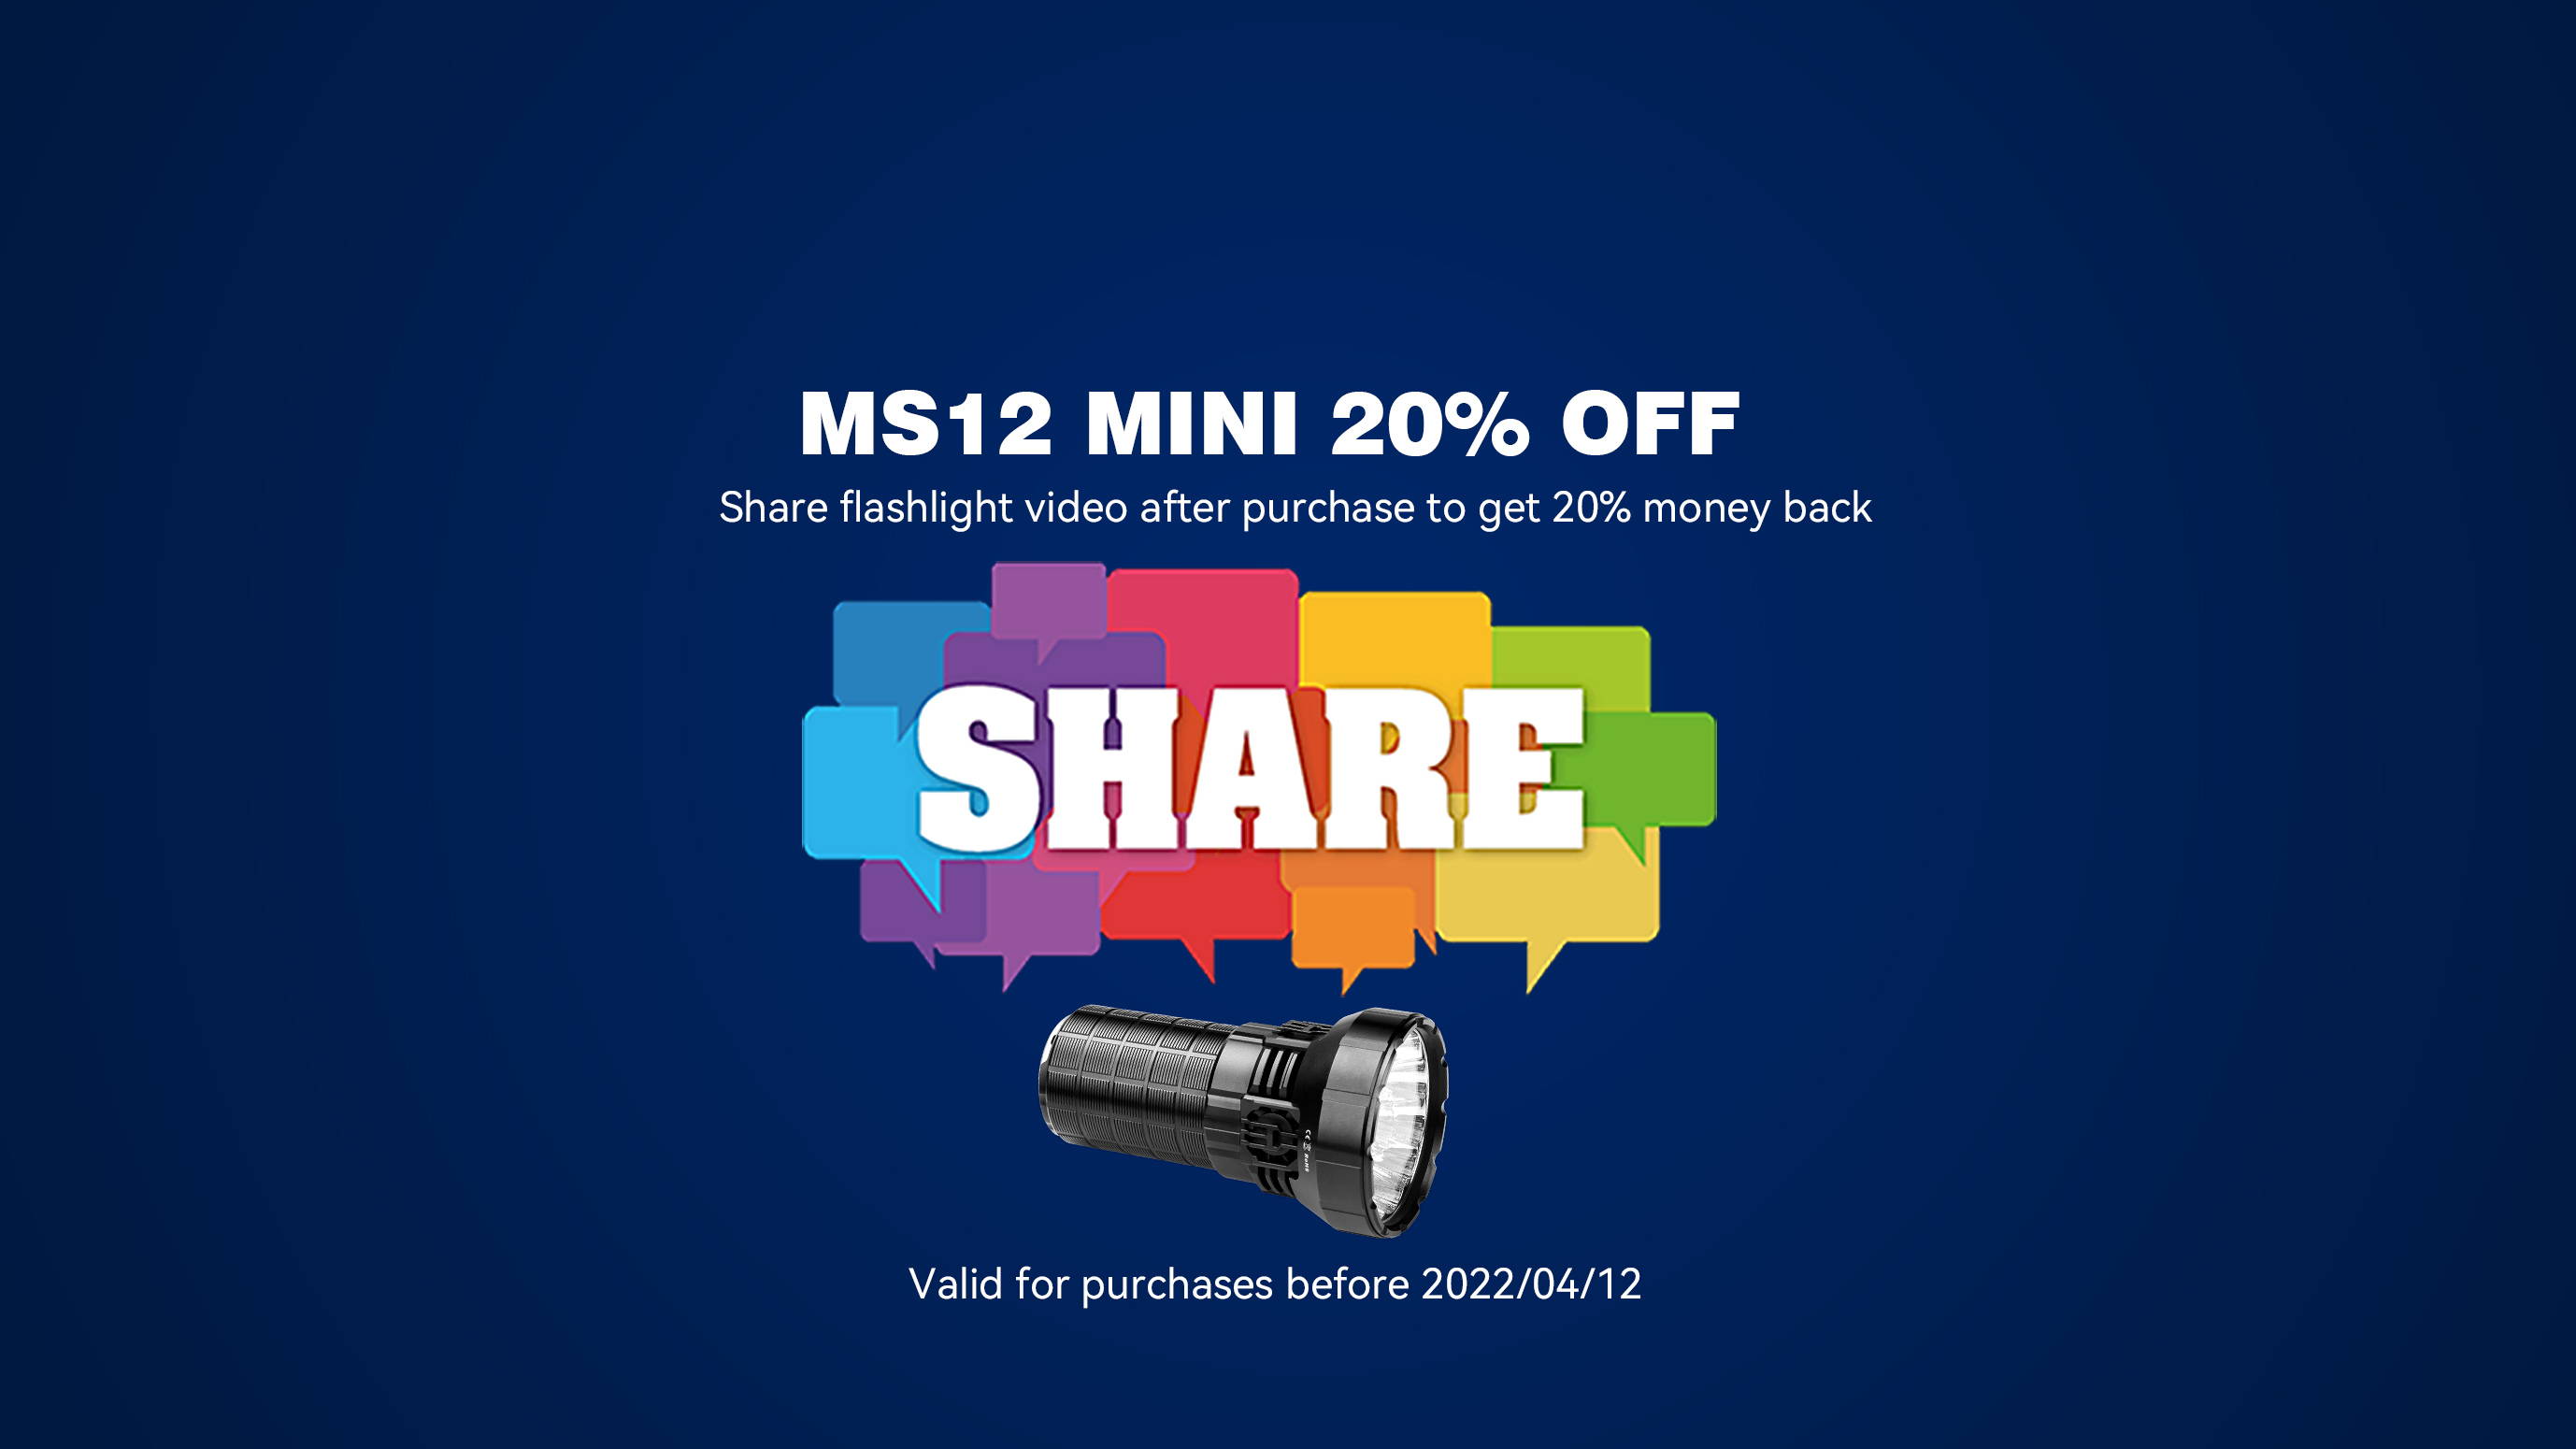 分享 MS12 MINI 并获得 20% 的退款